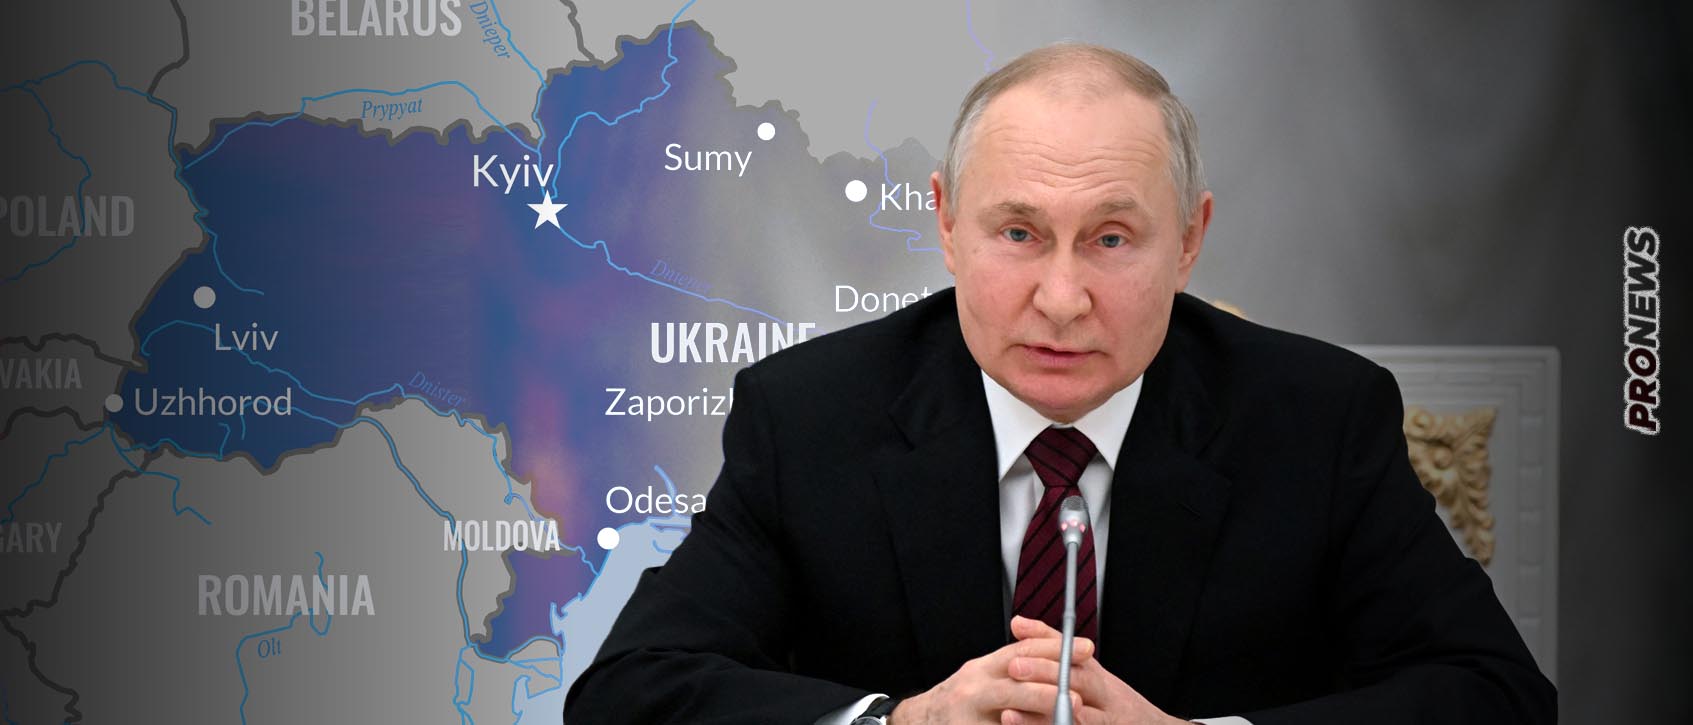 Η κατάληψη του Κιέβου εξακολουθεί να είναι βασικός στόχος της Ρωσίας: «Νέα επιστράτευση εξαρτάται από αυτό» λέει ο Β.Πούτιν